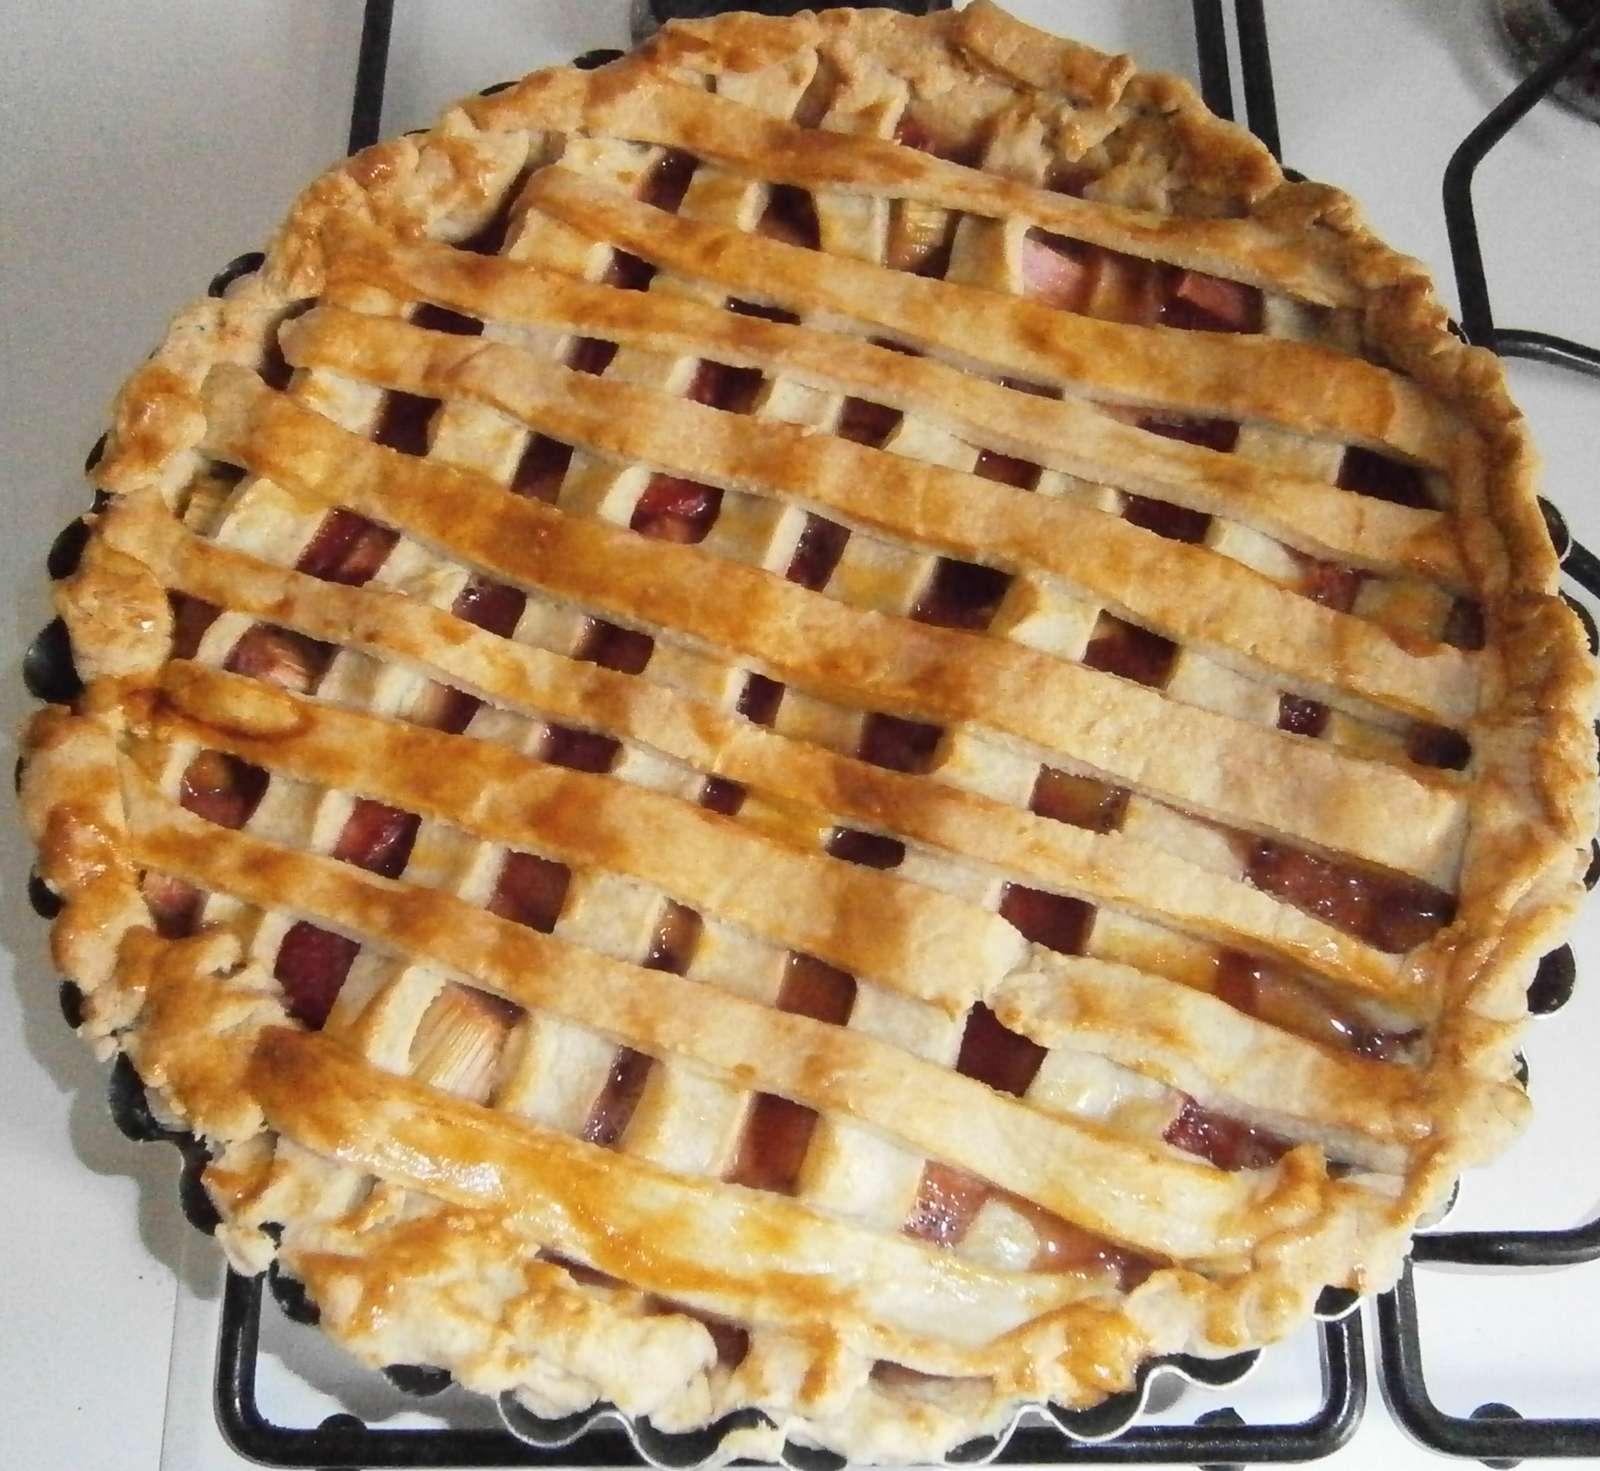 http://2.bp.blogspot.com/-T4kCLXcGfzA/T8-ZPAluXJI/AAAAAAAAAi4/a81jkl5OzE0/s1600/strawberry+rhubarb+pie.png